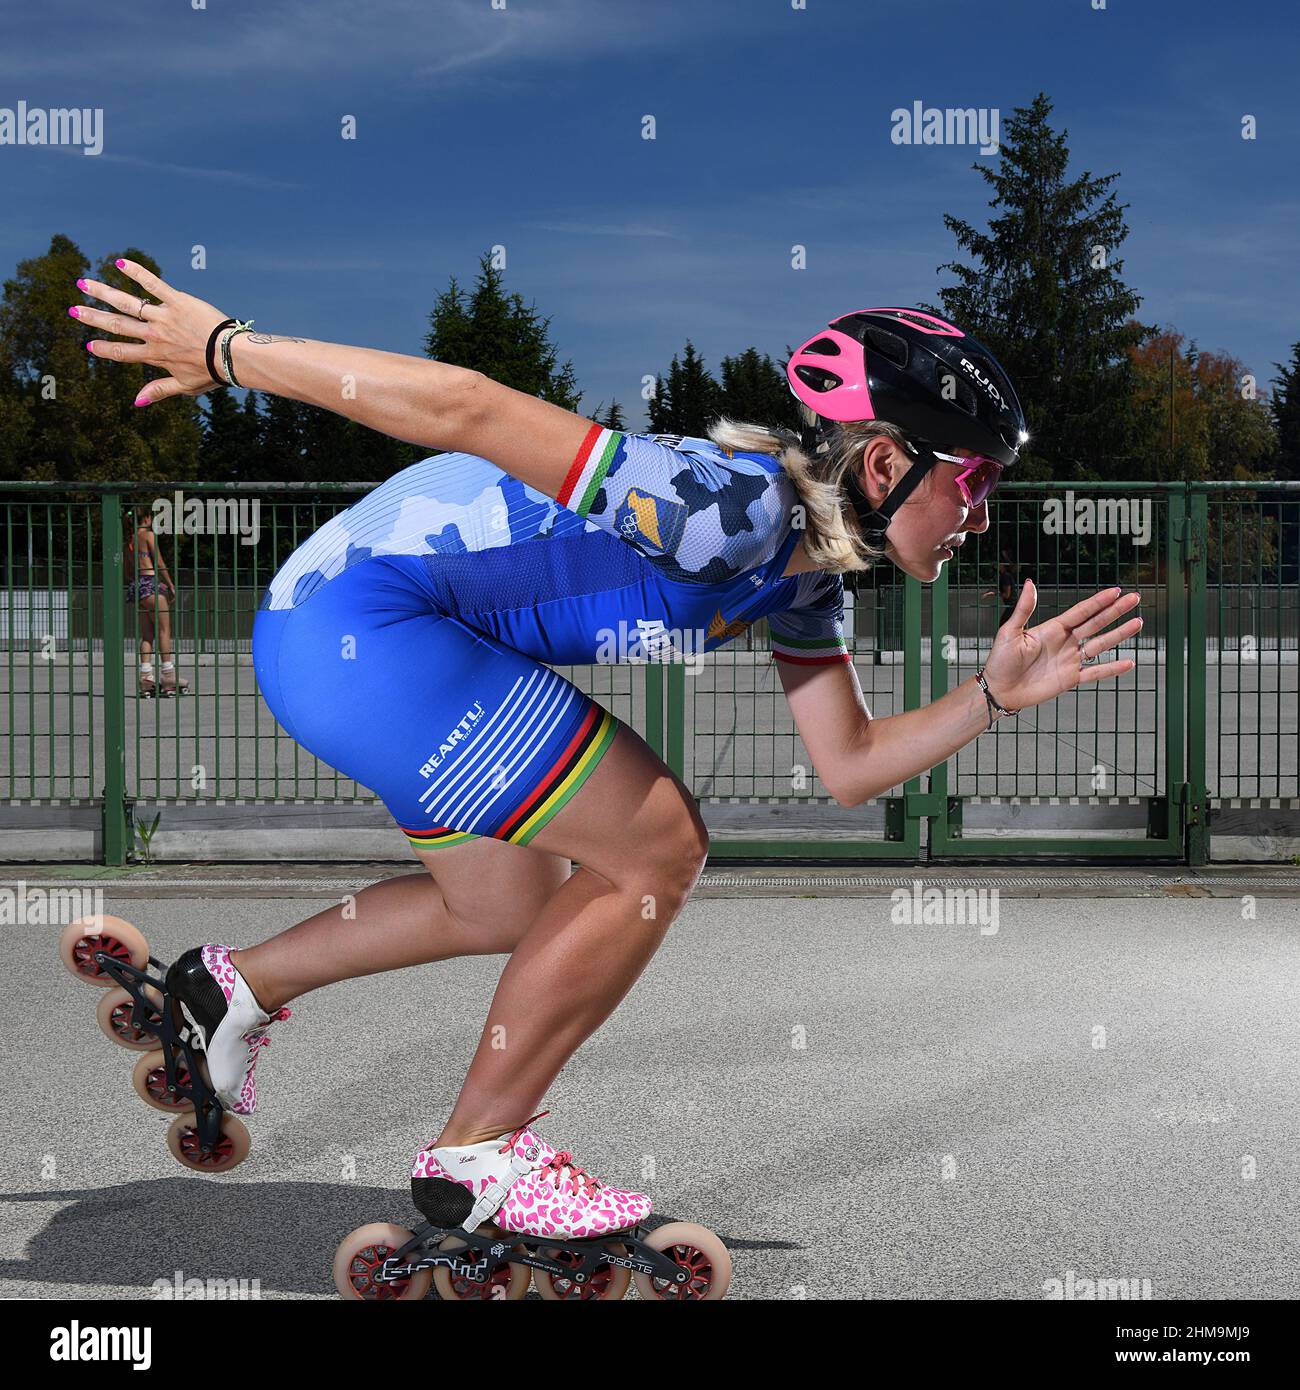 Italie, Rome, 28 mai 2021 : Francesca Lollobrigida, Médaille d'argent en patinage de vitesse 3000m, aux Jeux Olympiques d'hiver de Beijing 2022 photo © Sandro Banque D'Images